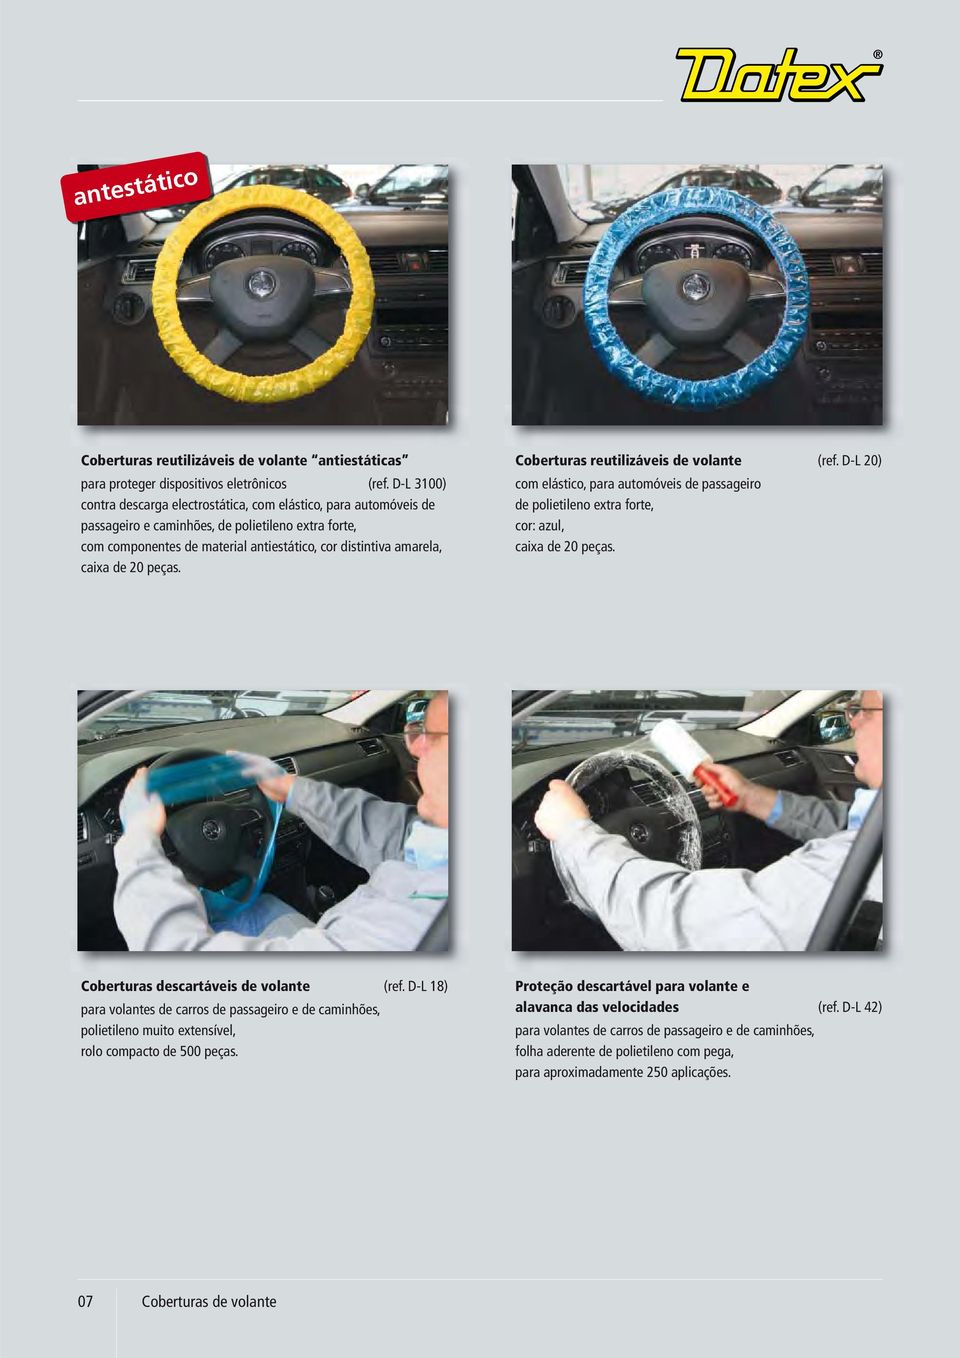 de 20 peças. Coberturas reutilizáveis de volante (ref. D-L 20) com elástico, para automóveis de passageiro de polietileno extra forte, cor: azul, caixa de 20 peças.